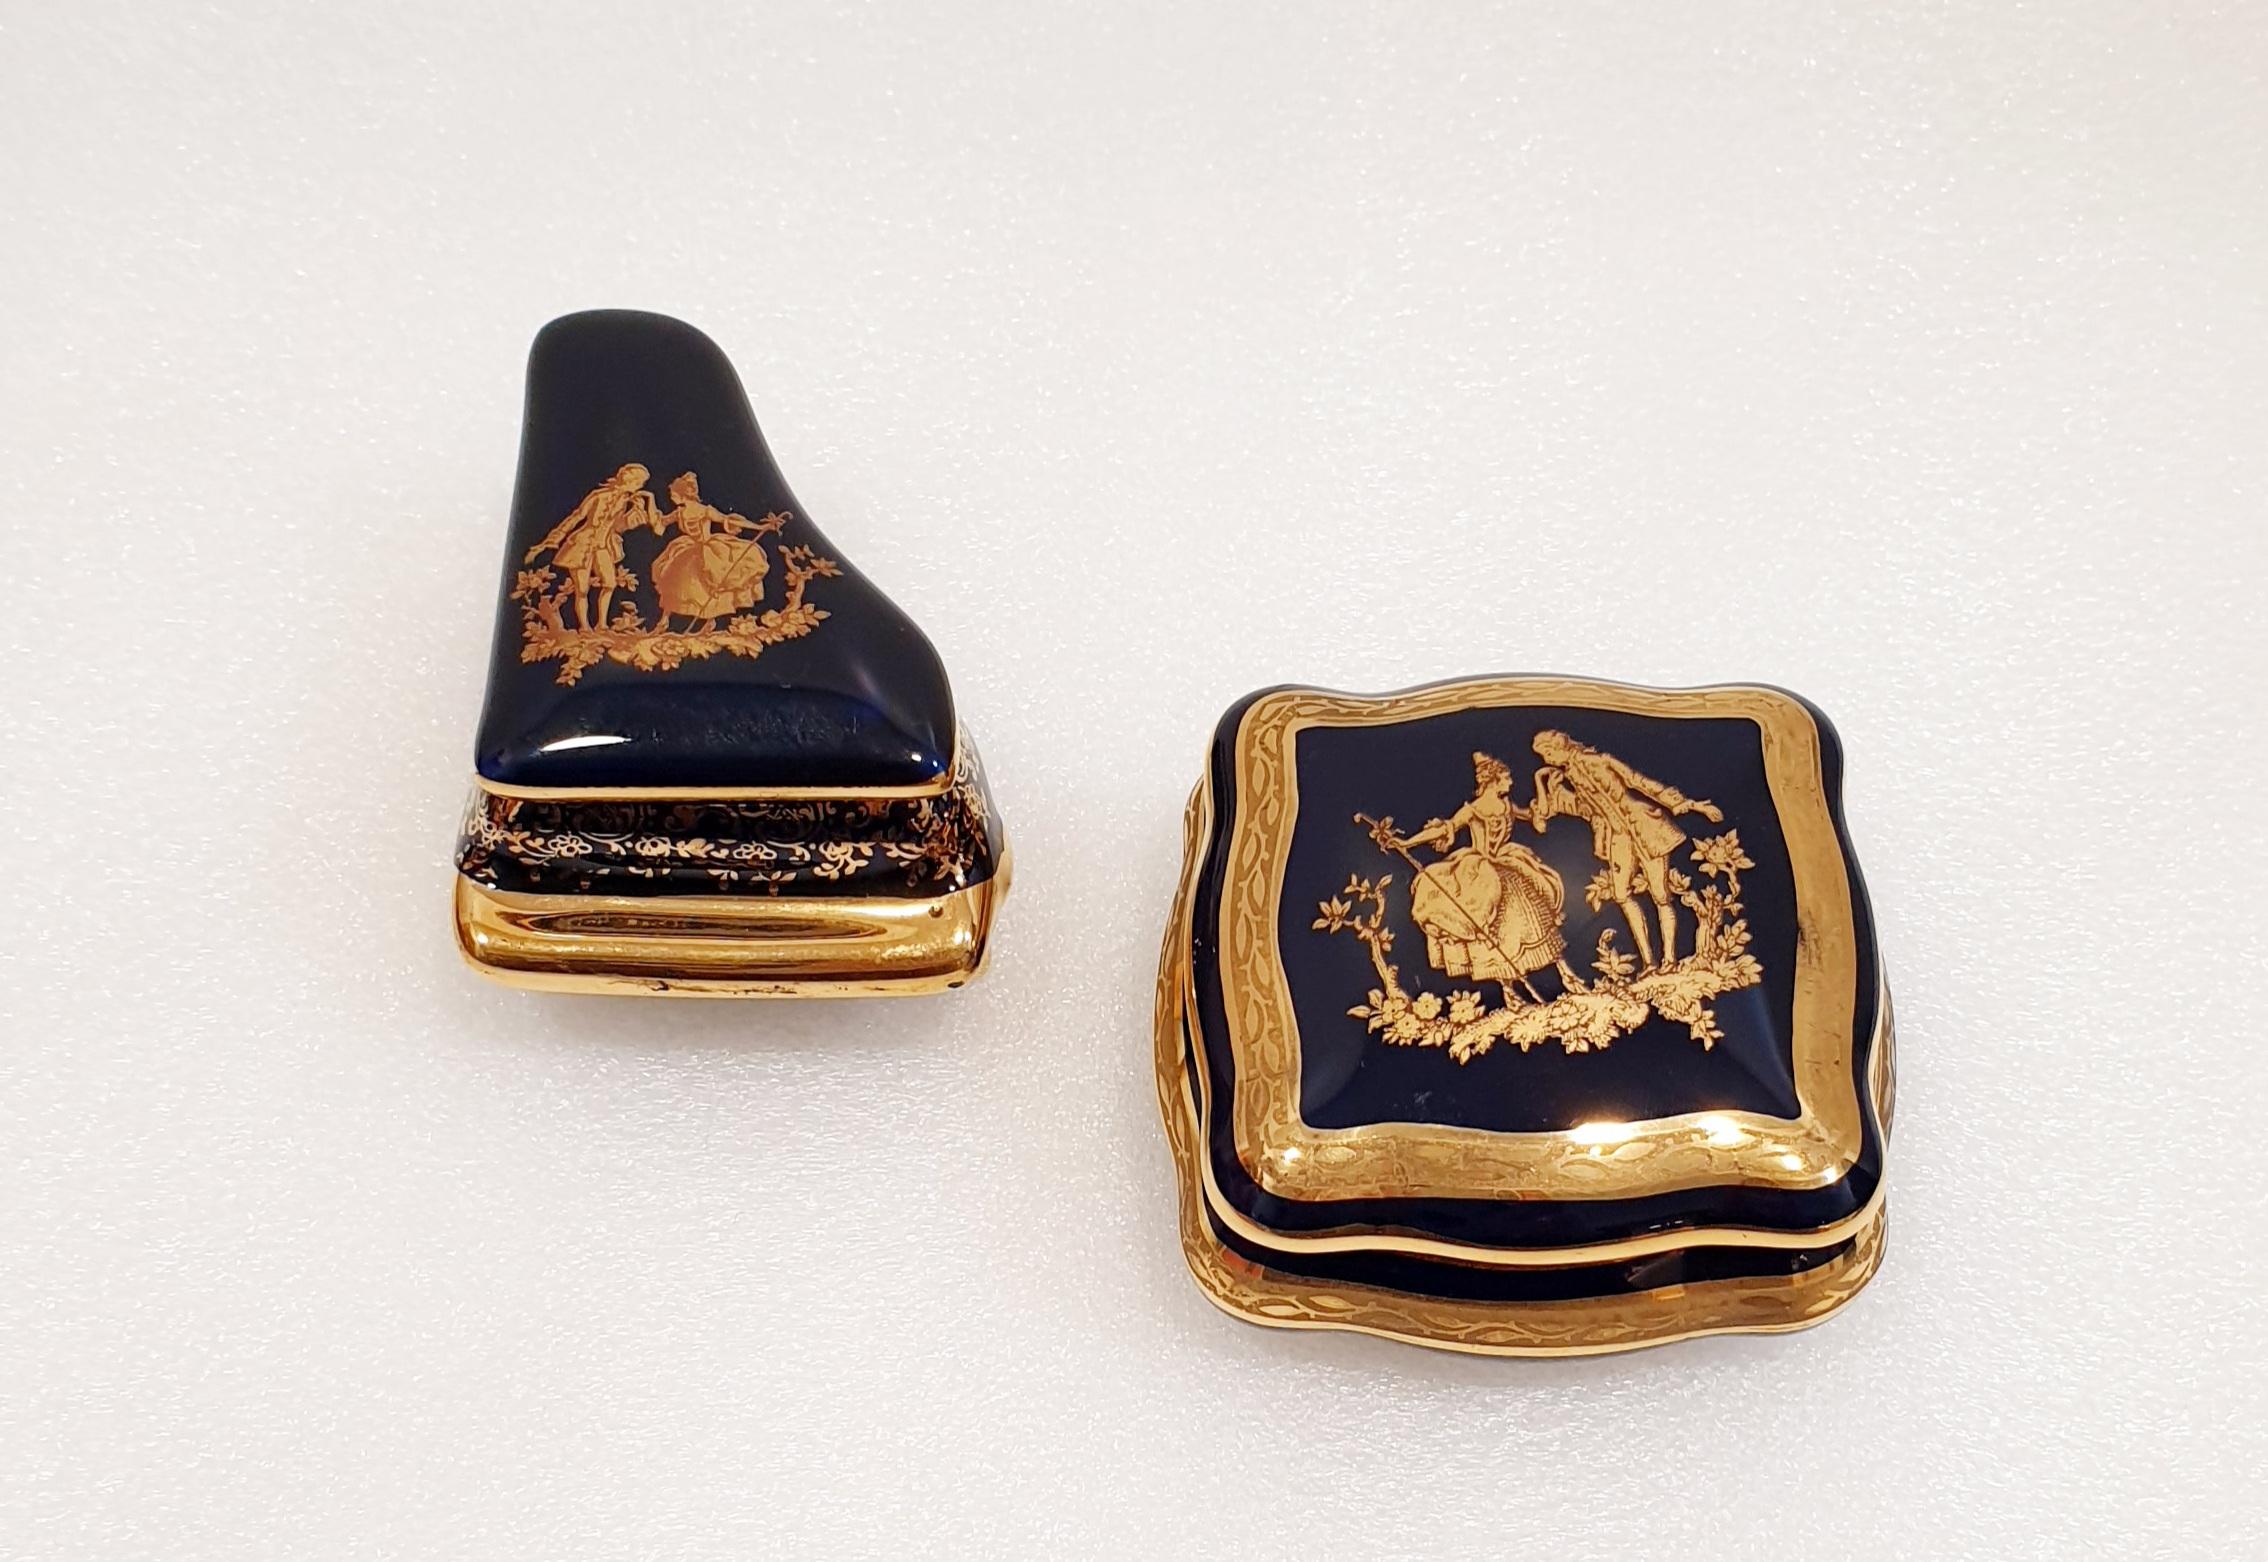 Elegante Schmuckkästchen aus Limoges in 22-karätigem Gold. 
Französisches Limoges-Porzellan im Vintage-Stil, kobaltblau, mit feinem Golddekor.
Auf dem Sockel bezeichnet als 